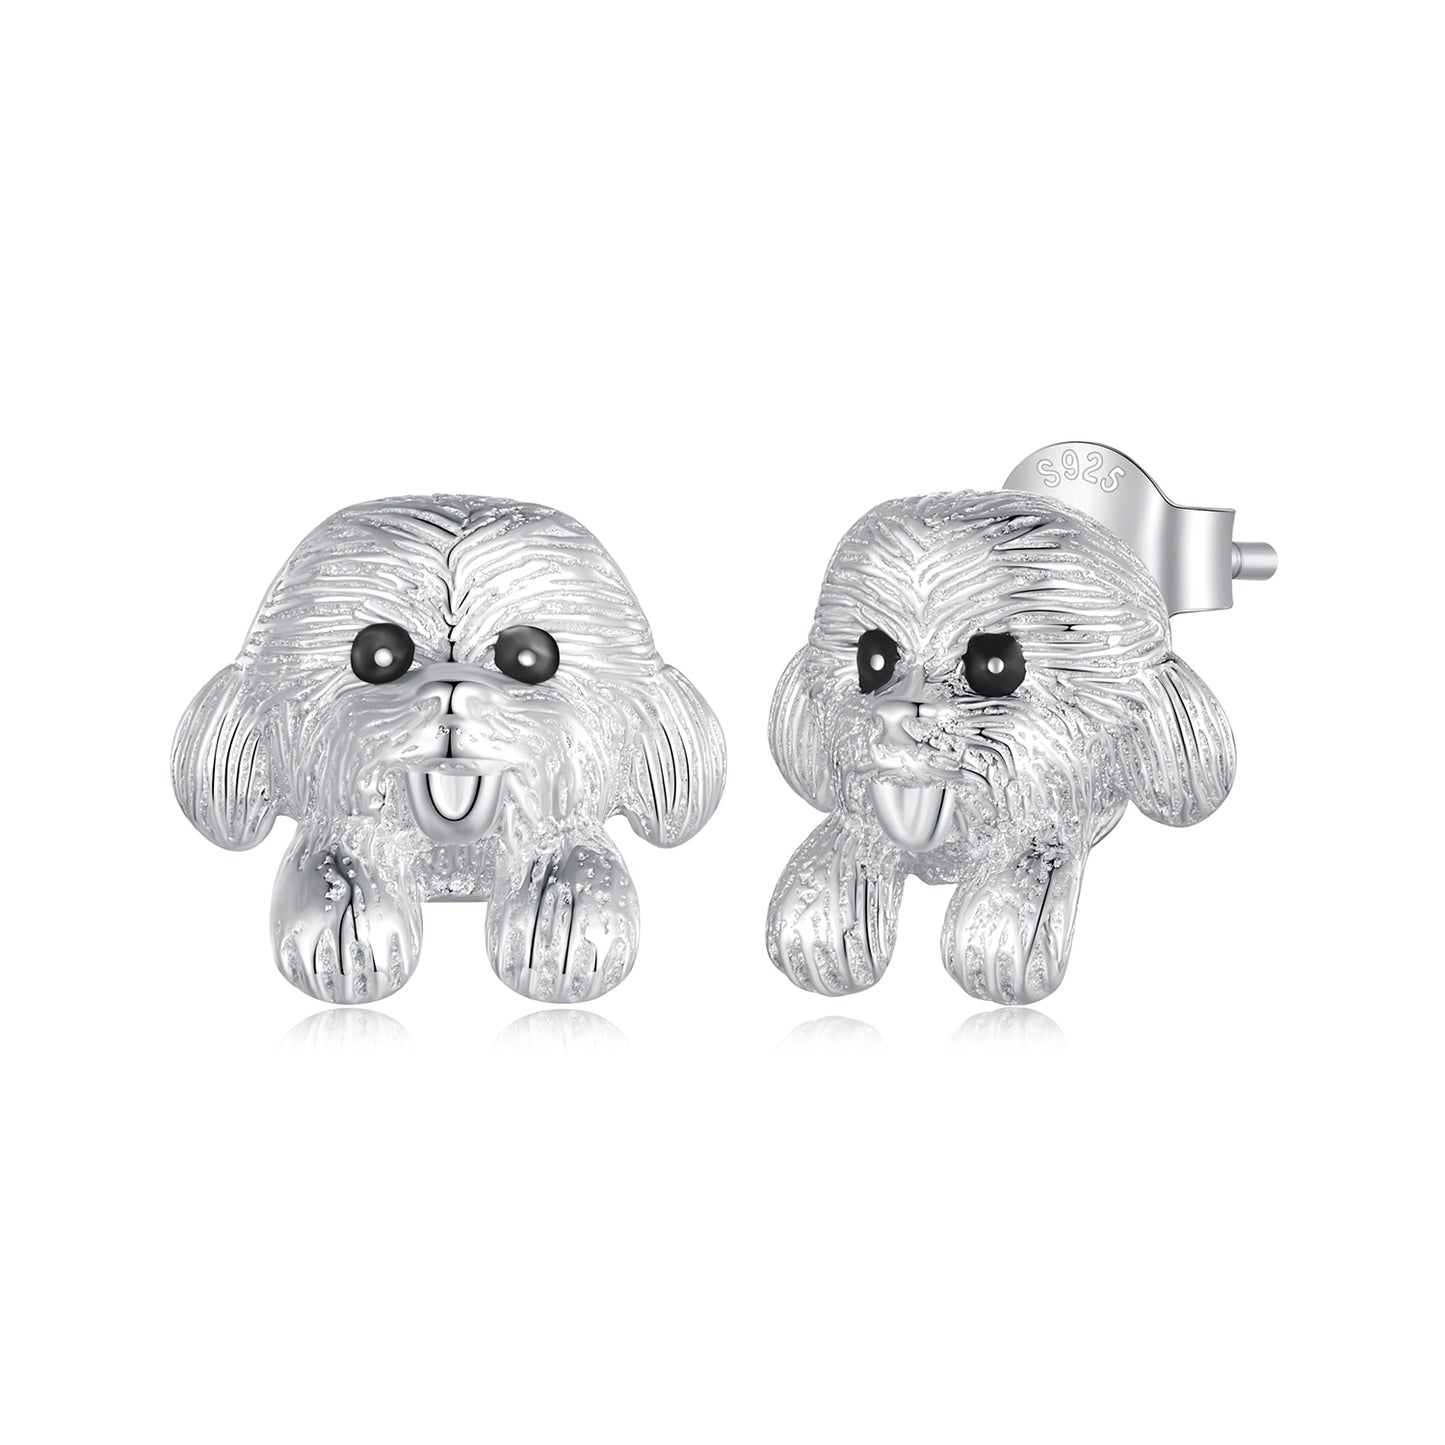 Teddy earrings,  92.5% Sterling Silver,  Cute dog ear stud